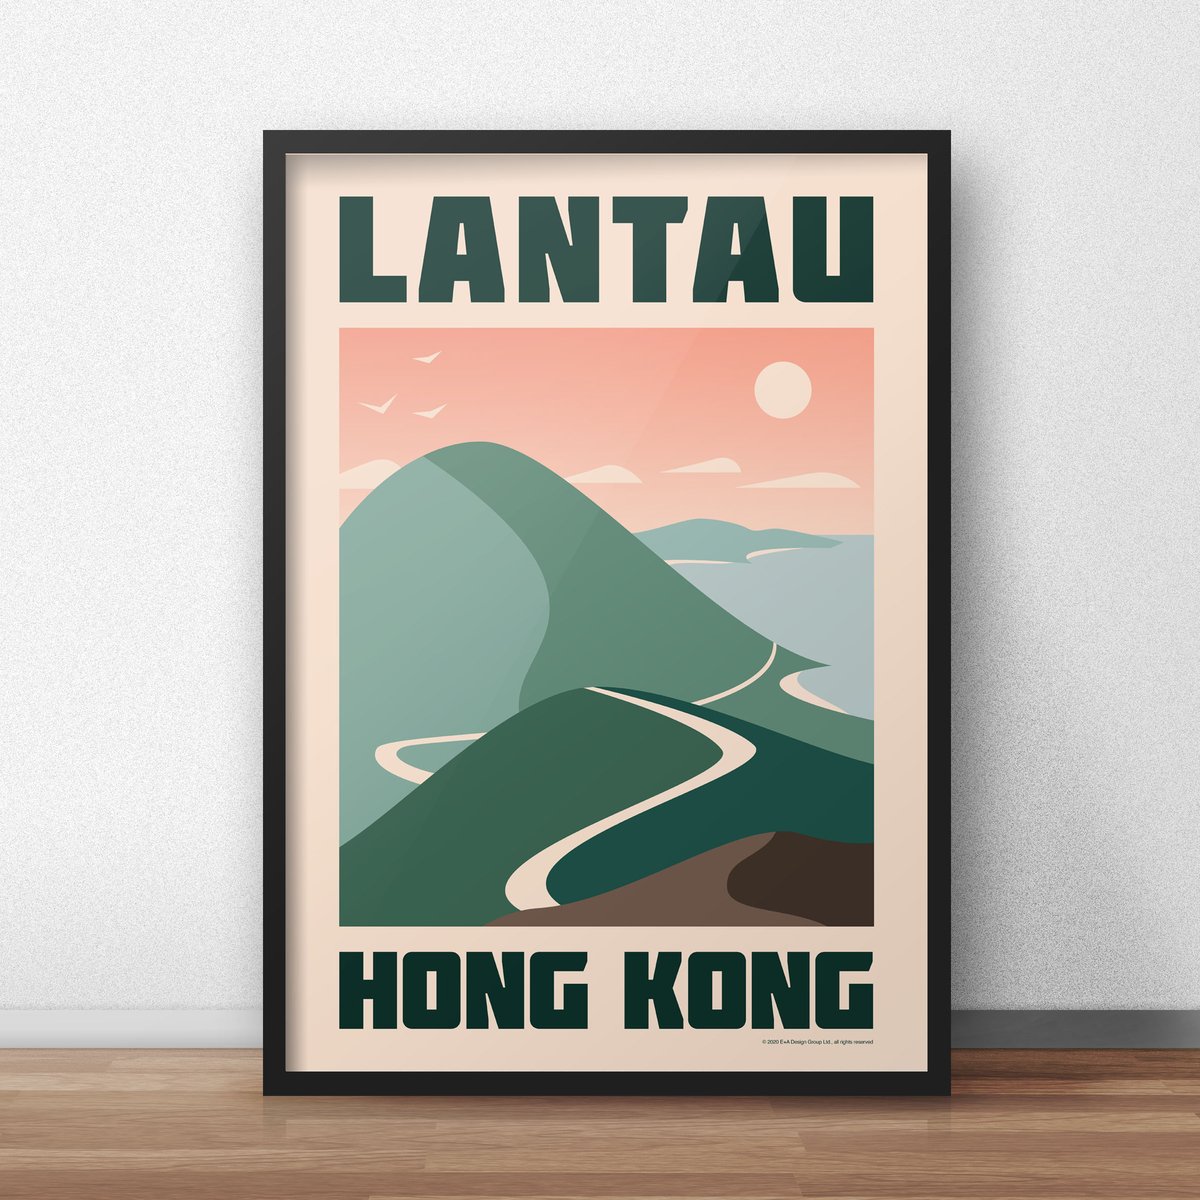 Image of Lantau Poster